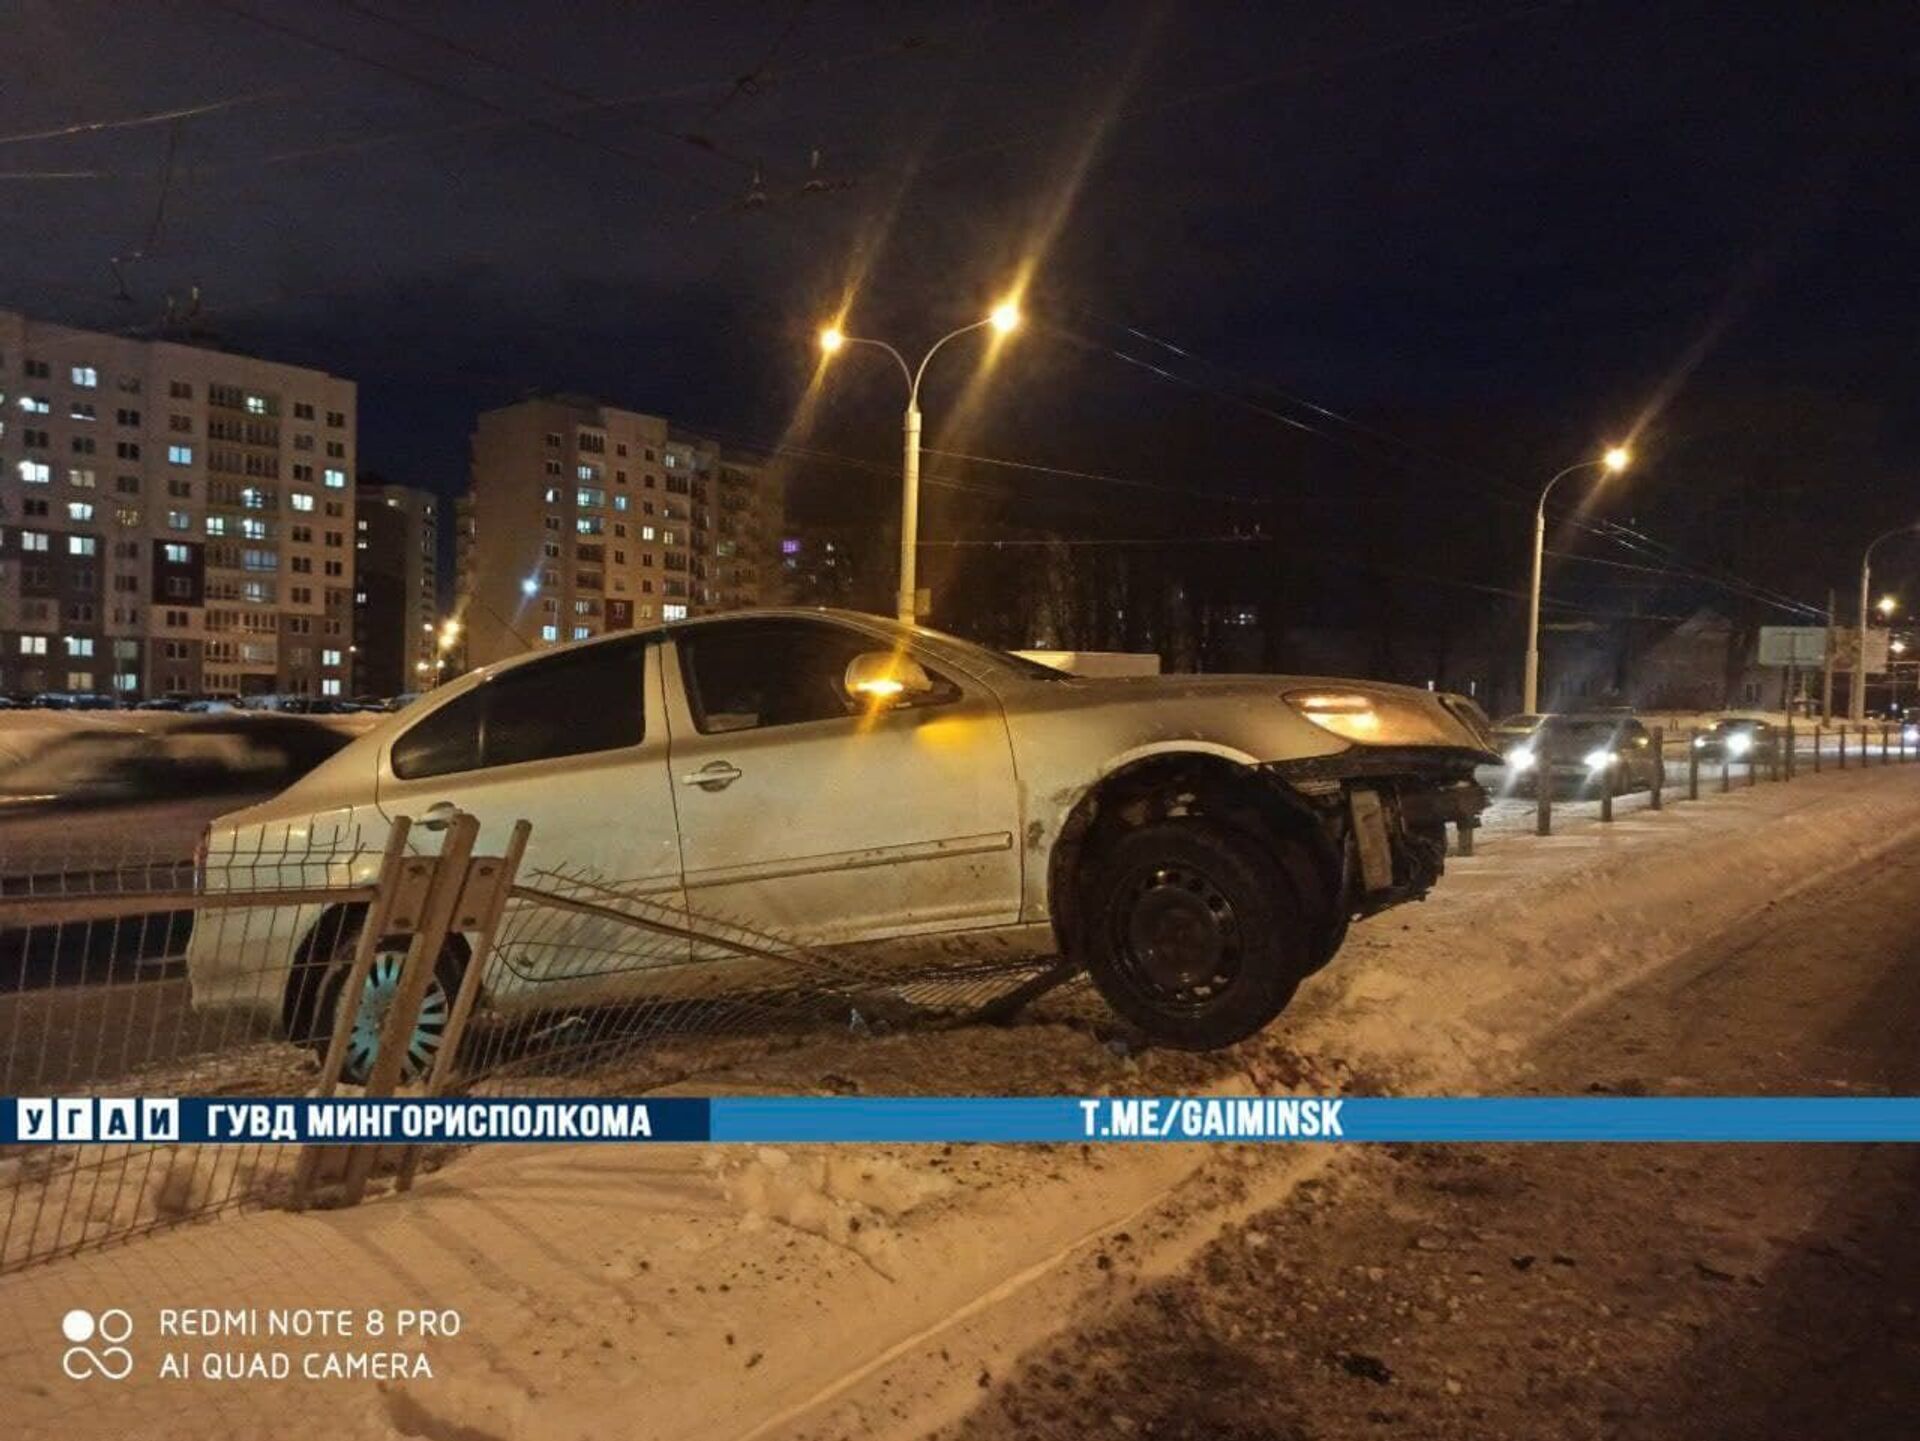 В результате ДТП автомобиль повис на заборе ― фото - Sputnik Беларусь, 1920, 13.02.2021